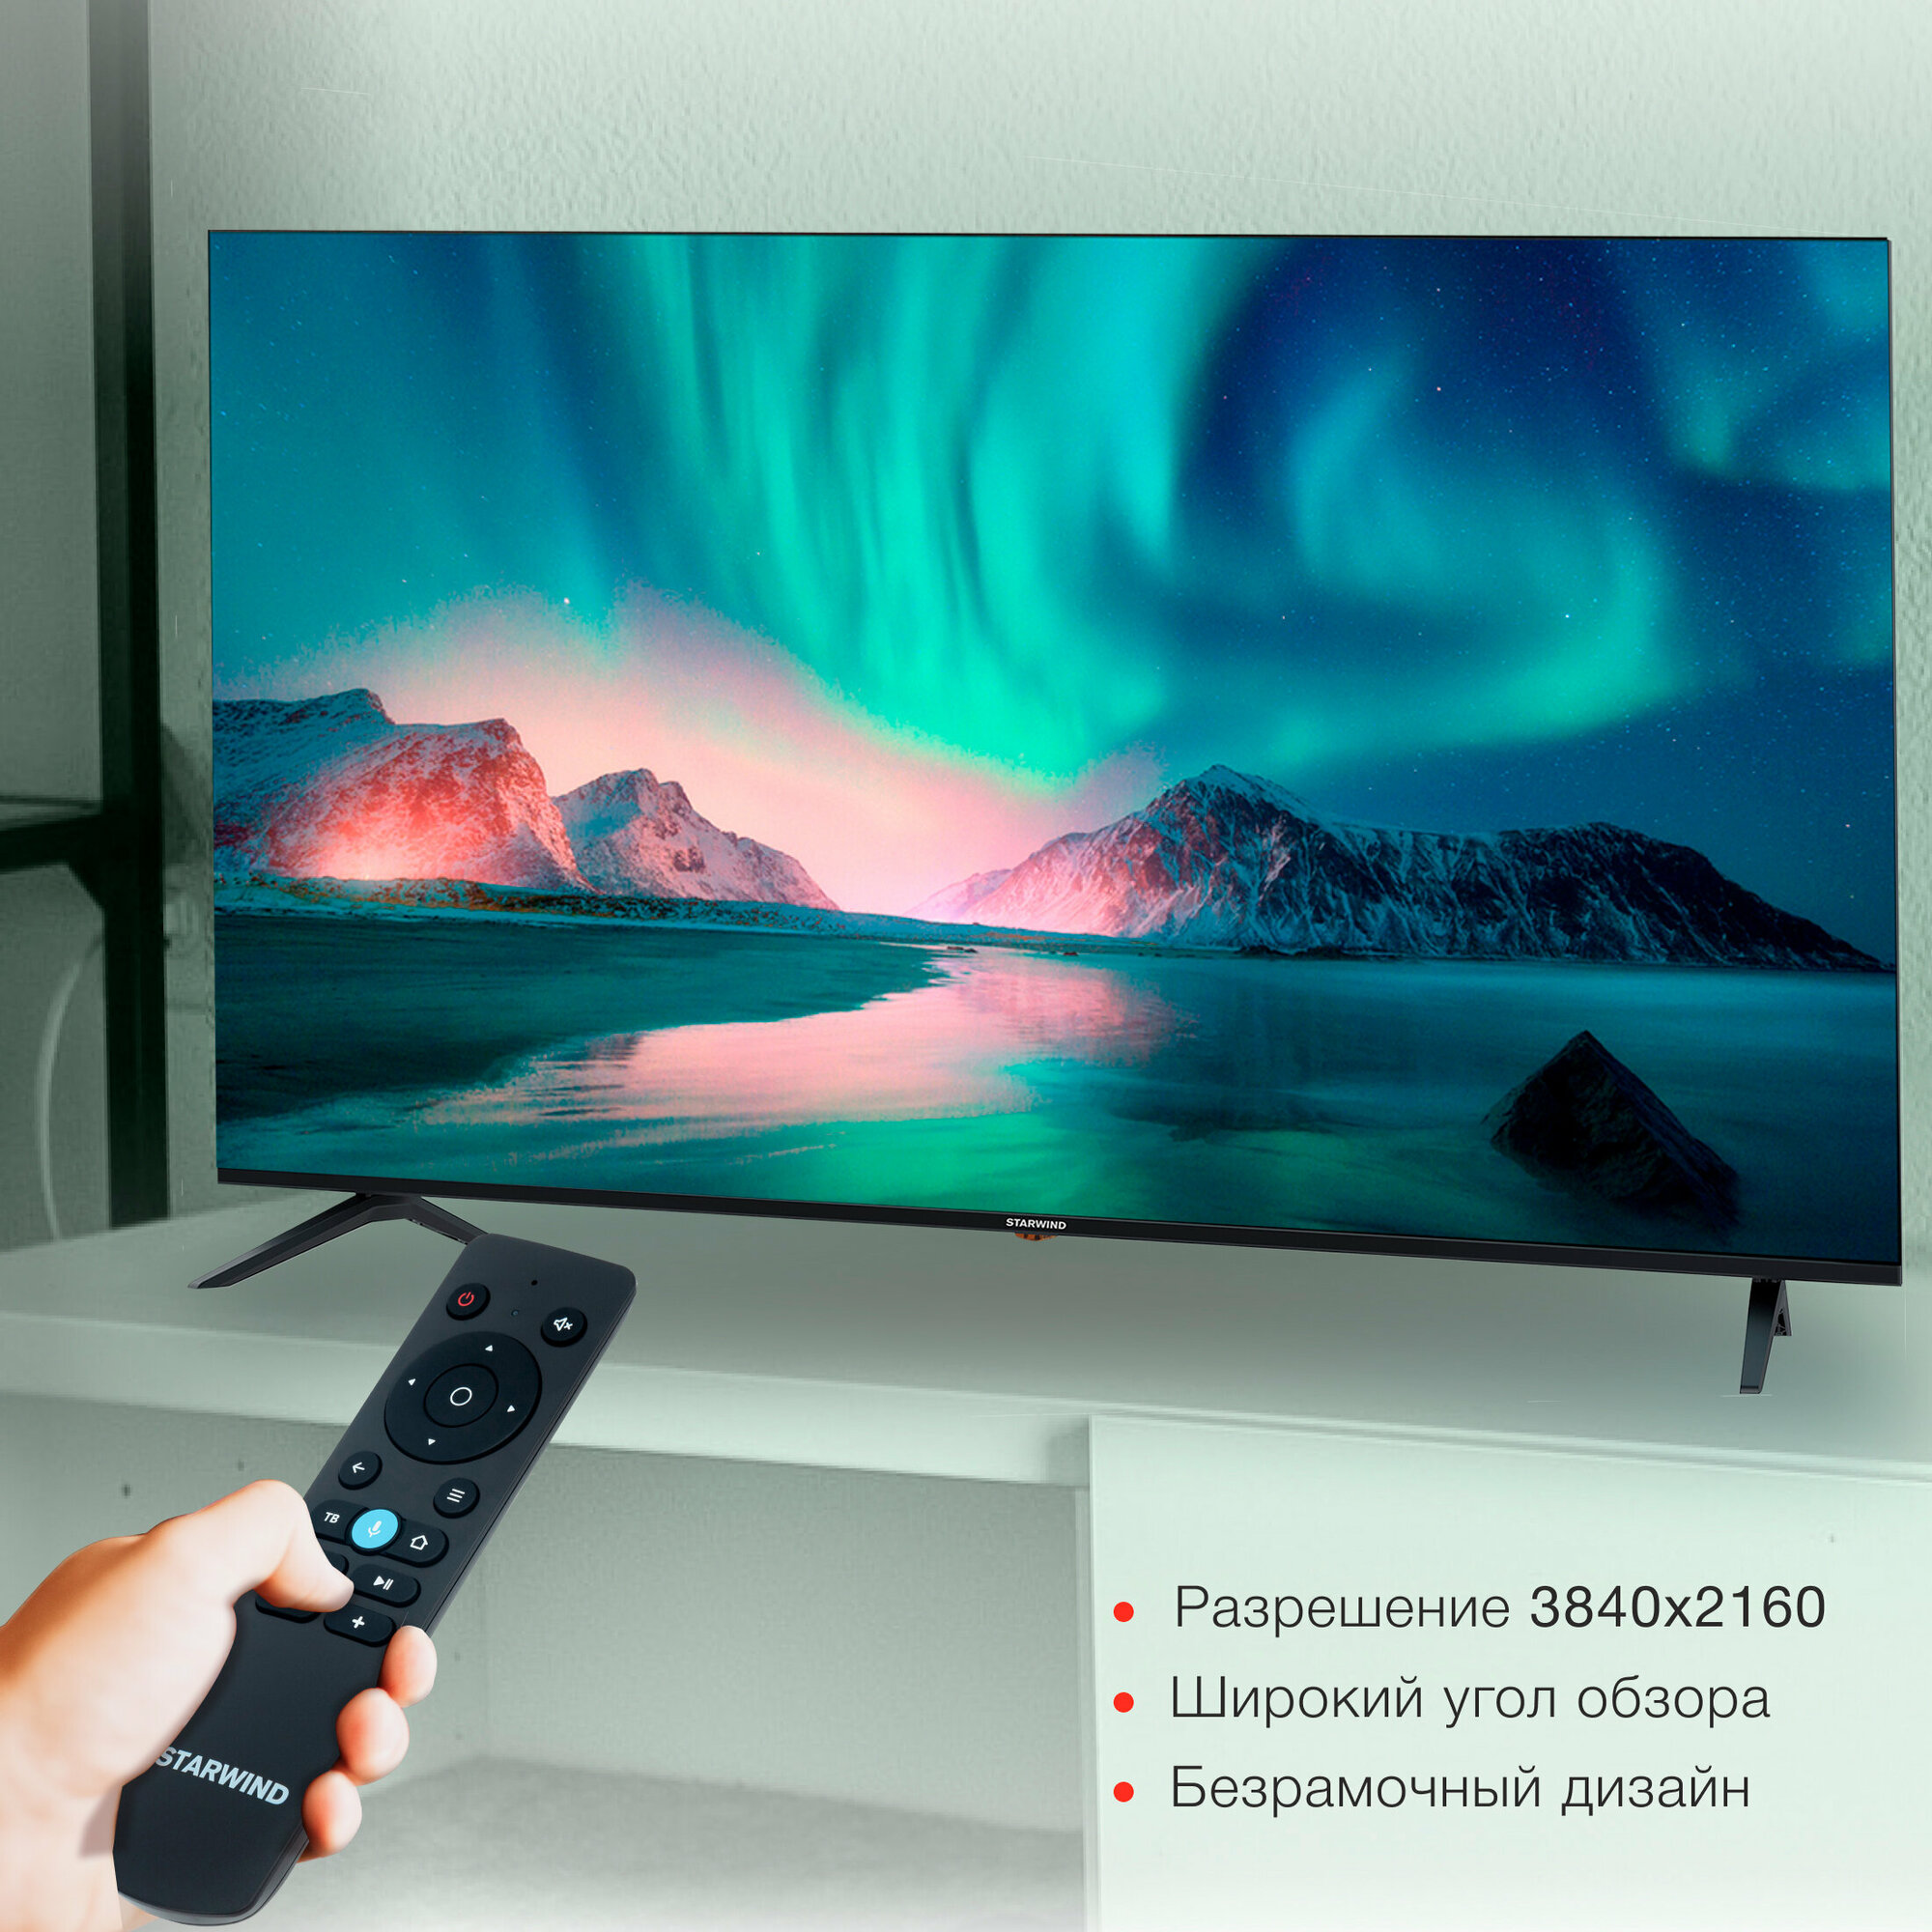 Телевизор Starwind Яндекс.ТВ SW-LED65UG403, 65", LED, 4K Ultra HD, Яндекс.ТВ, черный - фото №15